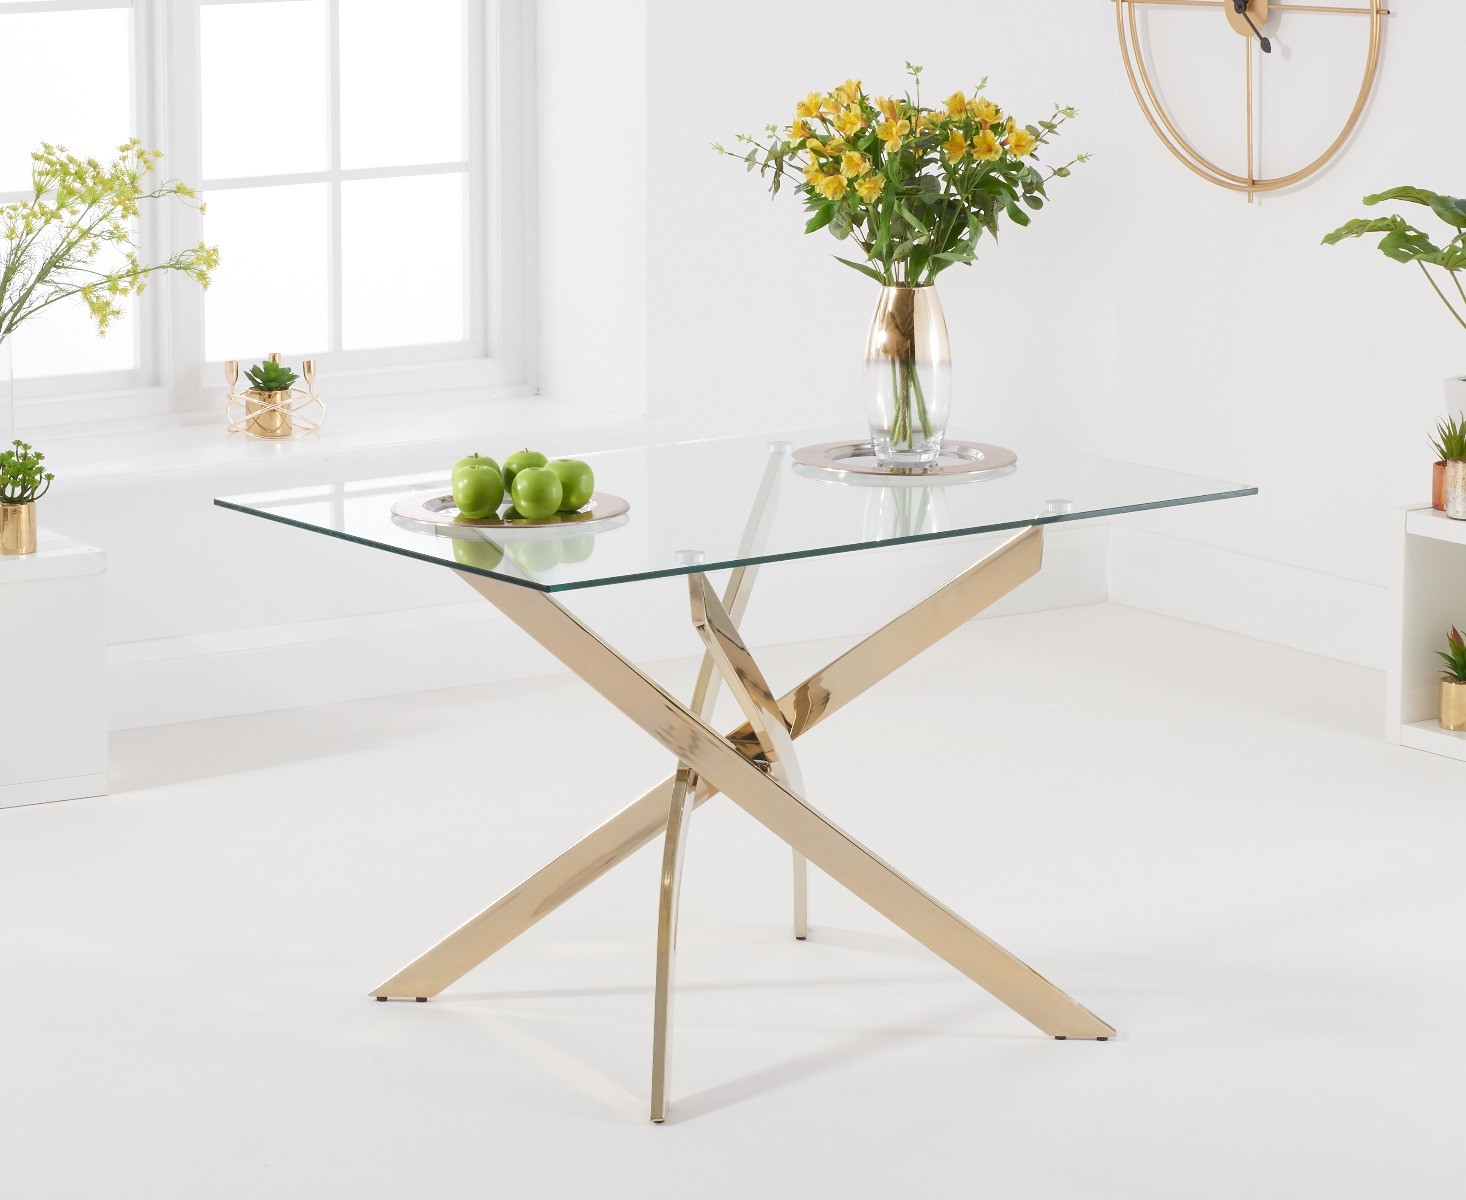 Denver 120cm Rectangular Glass Gold Leg Dining Table